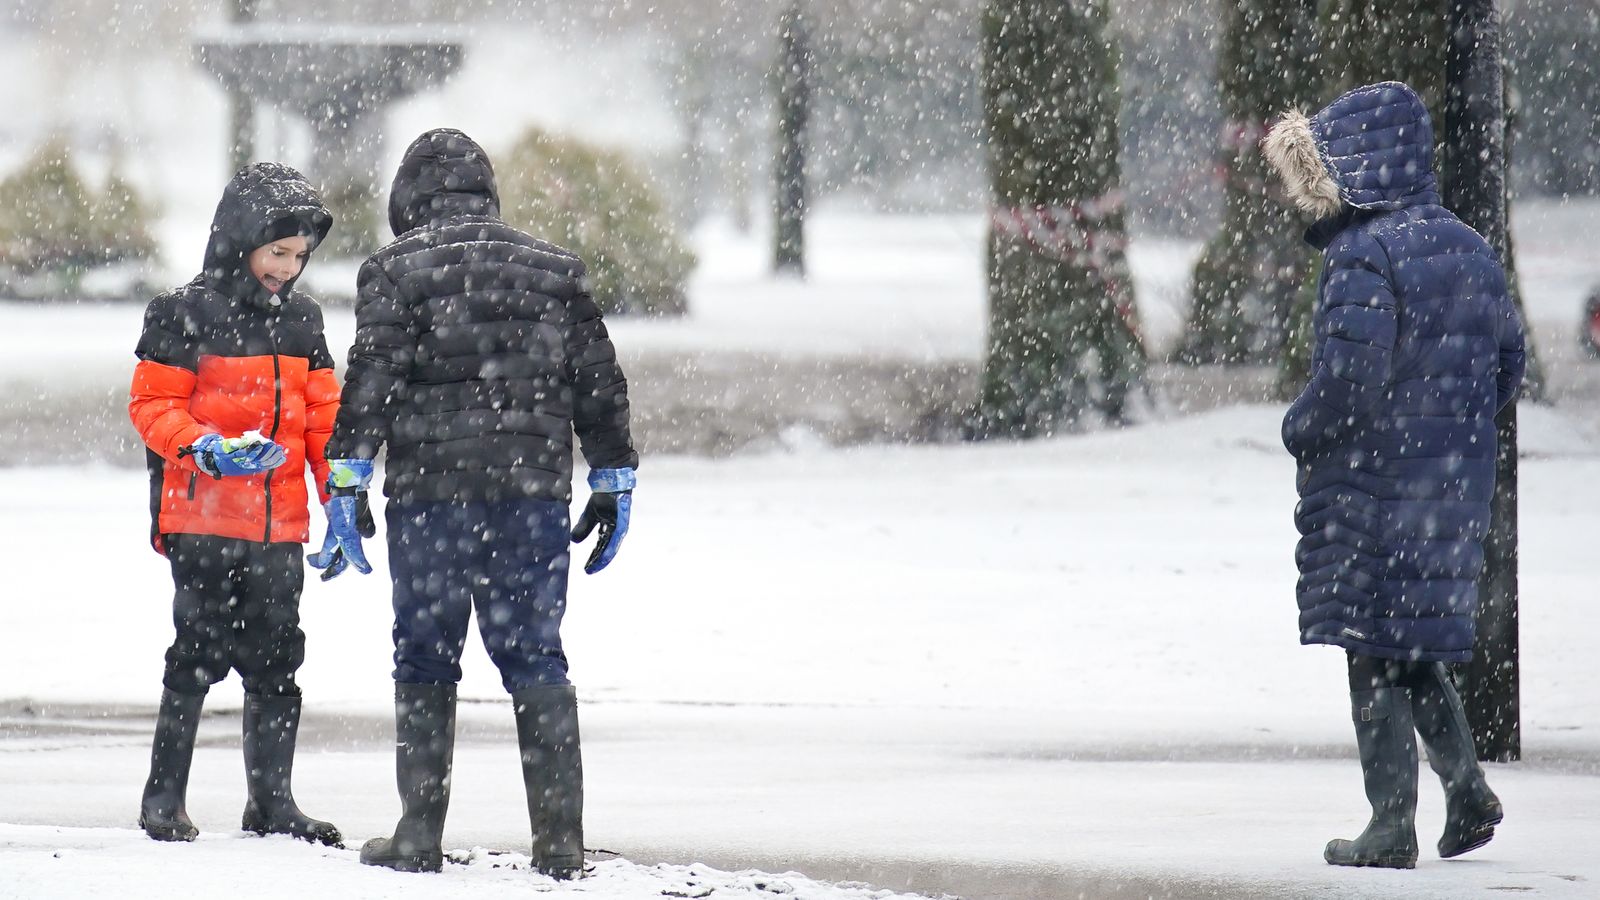 Погода в Великобритании: снег покрывает часть страны, школы закрываются, а пассажиры сталкиваются с турбулентностью |  Новости Великобритании